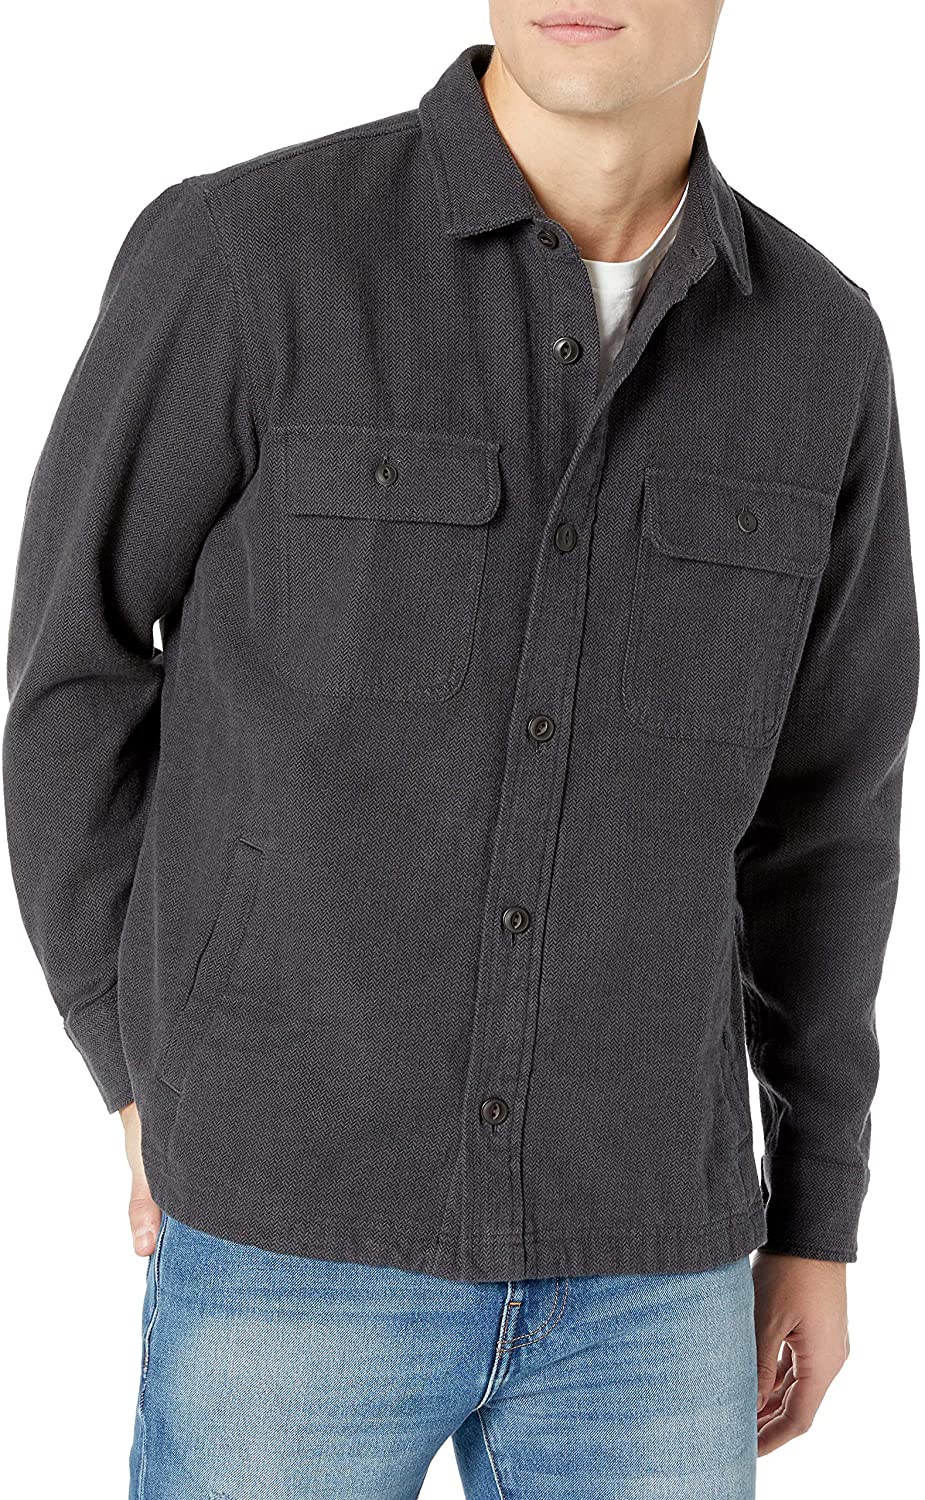 Goodthreads Men's Heavyweight Flannel Shirt Jacket | eBay